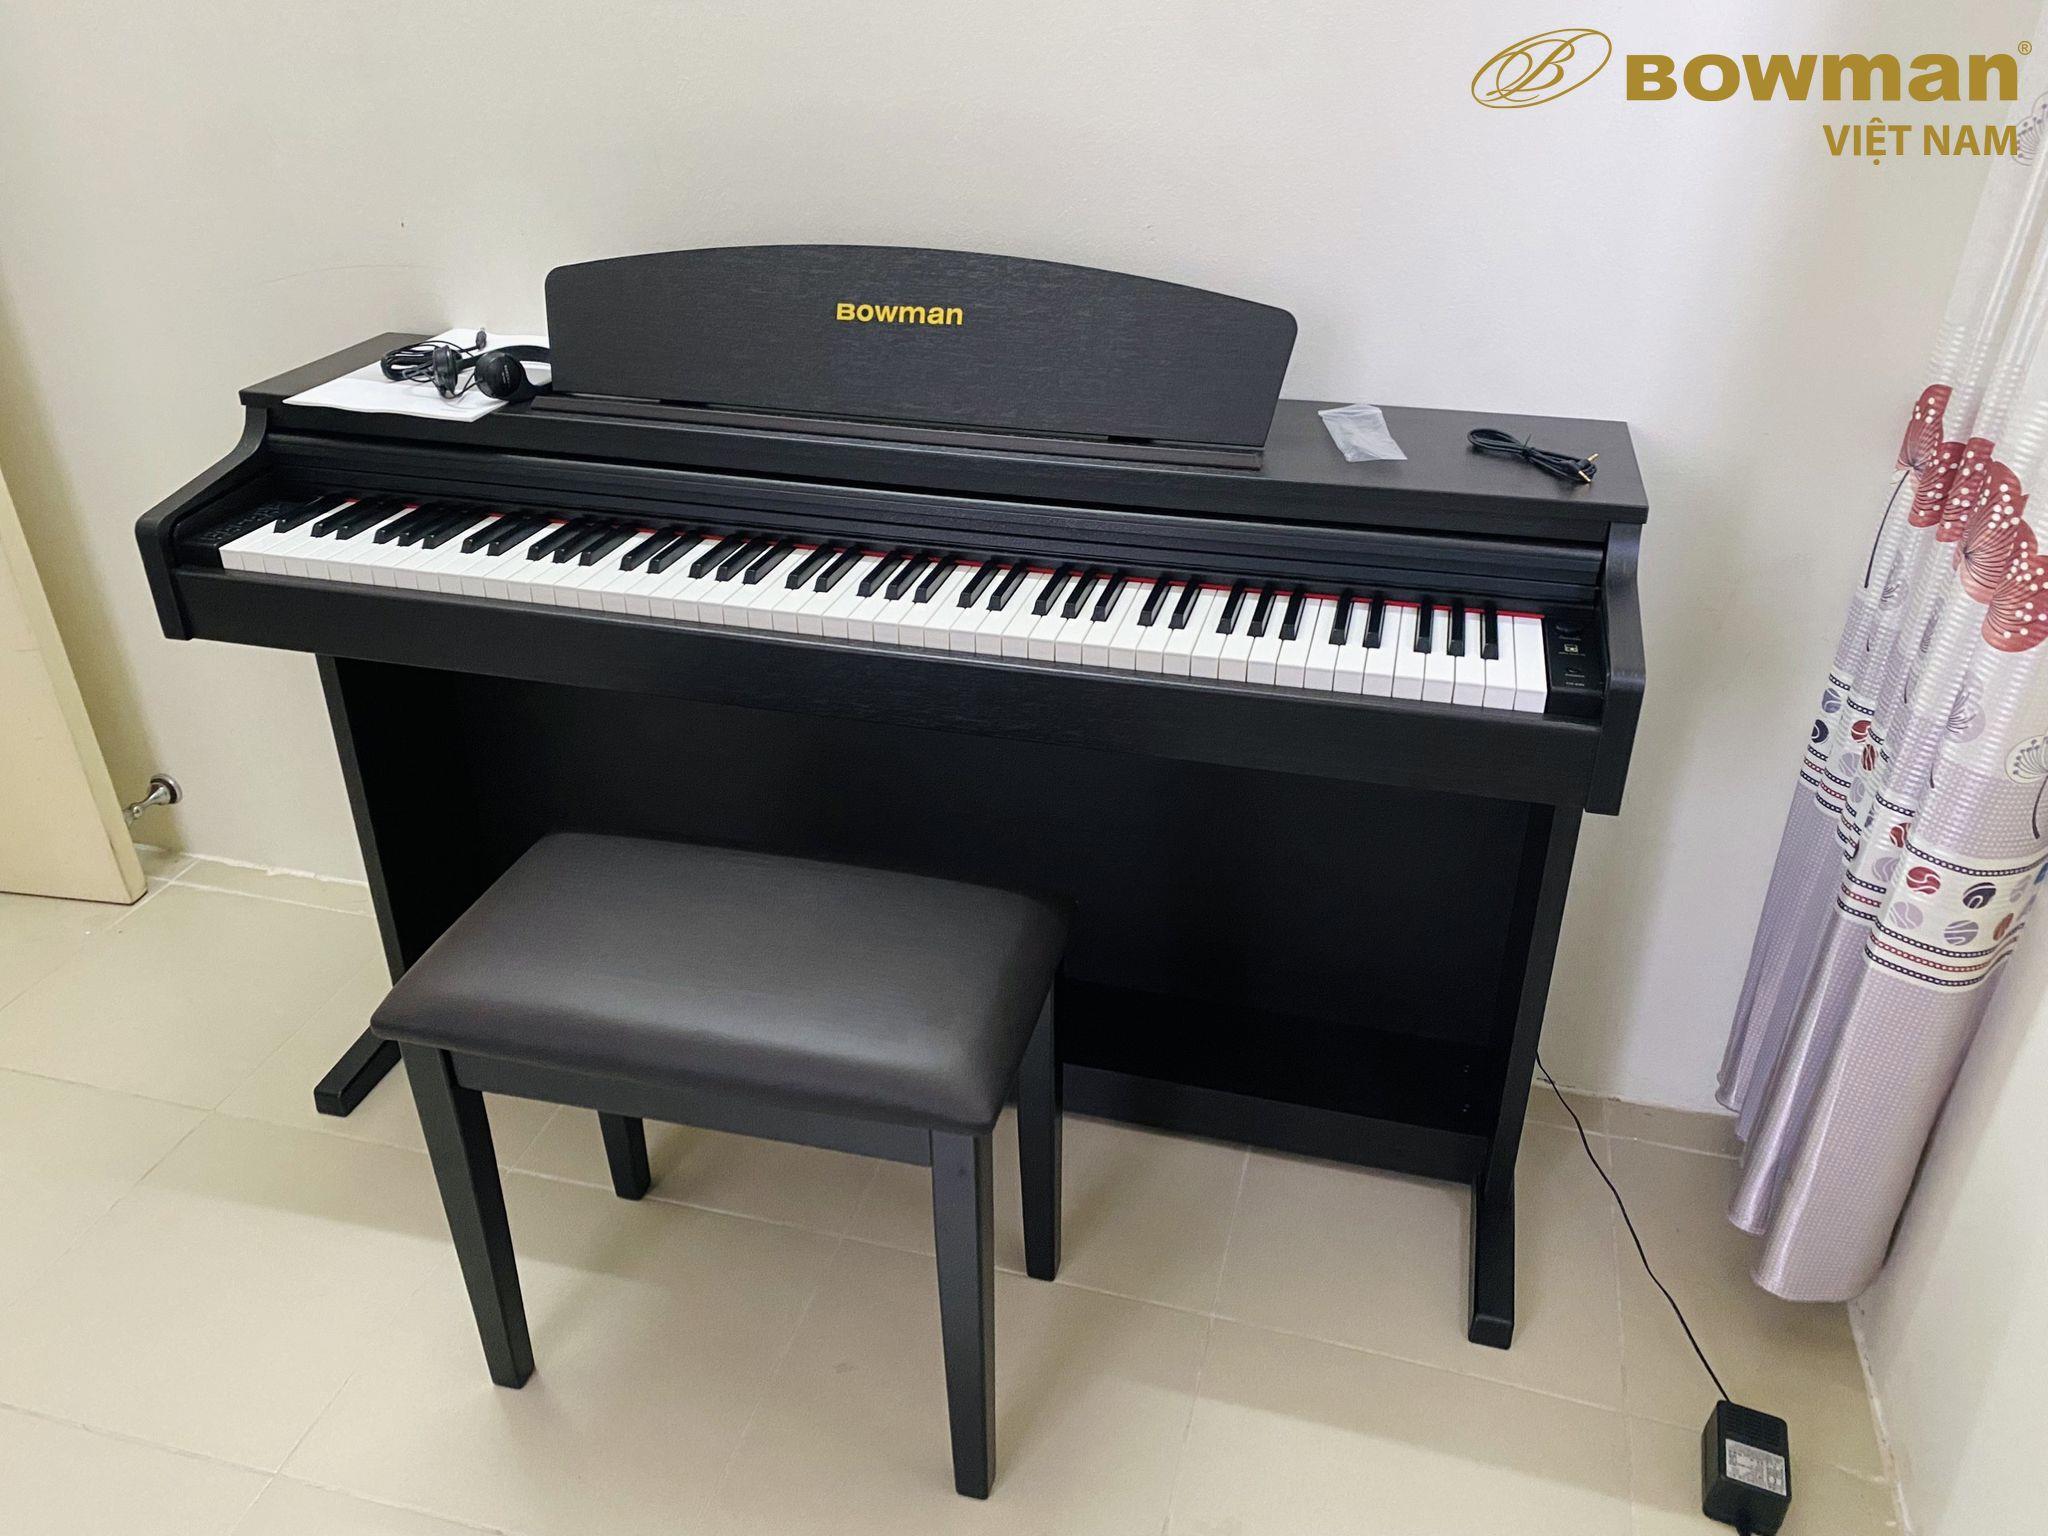 Lắp đặt piano BOWMAN CX230 (Model 2022) tại Tân Lập - Đan Phượng - Hà Nội